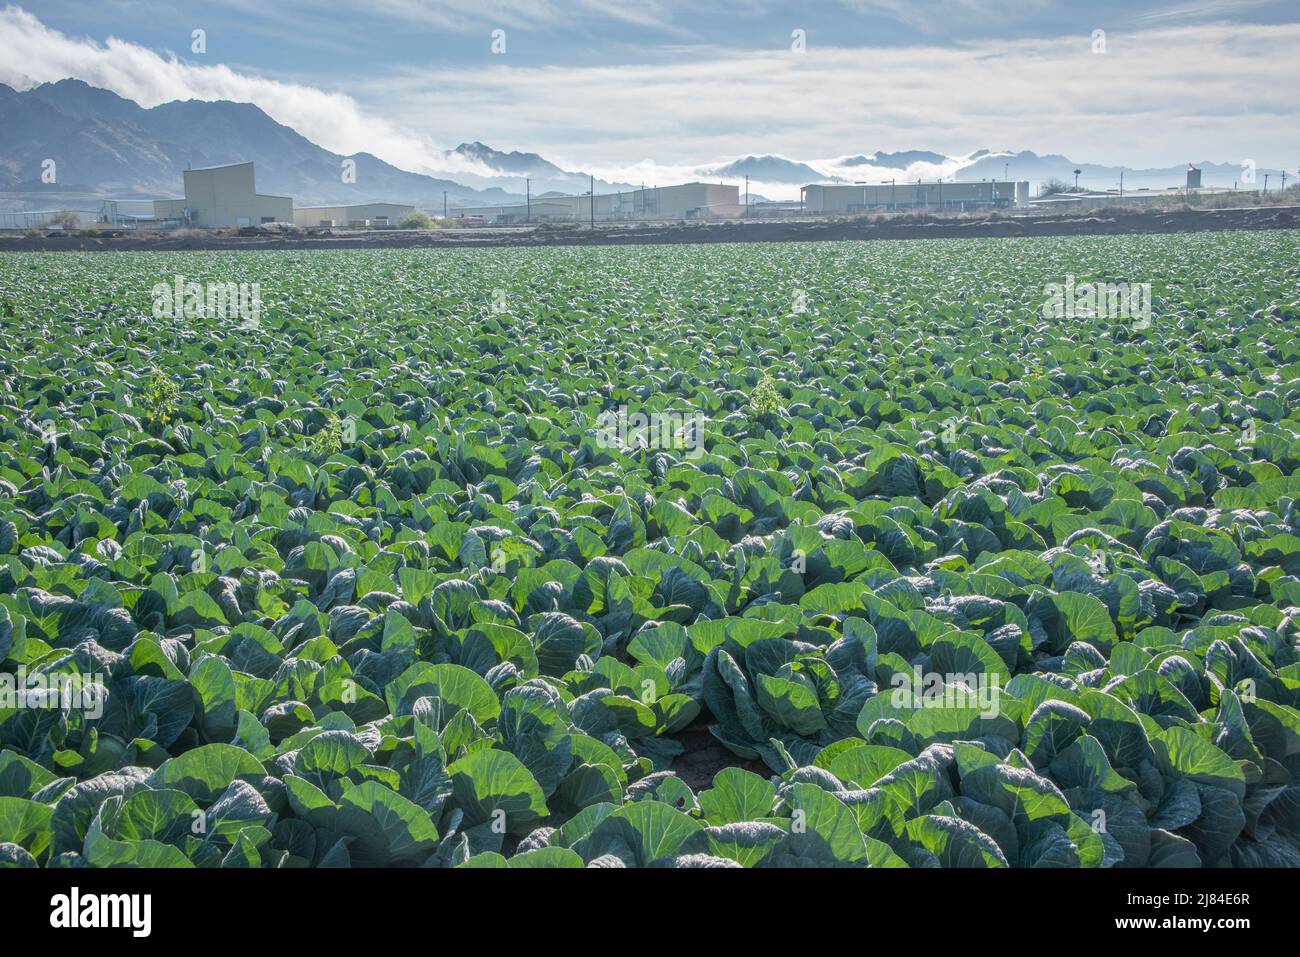 Les rangées et les rangées de choux sont prêtes pour la récolte à Yuma, Arizona, États-Unis. Banque D'Images